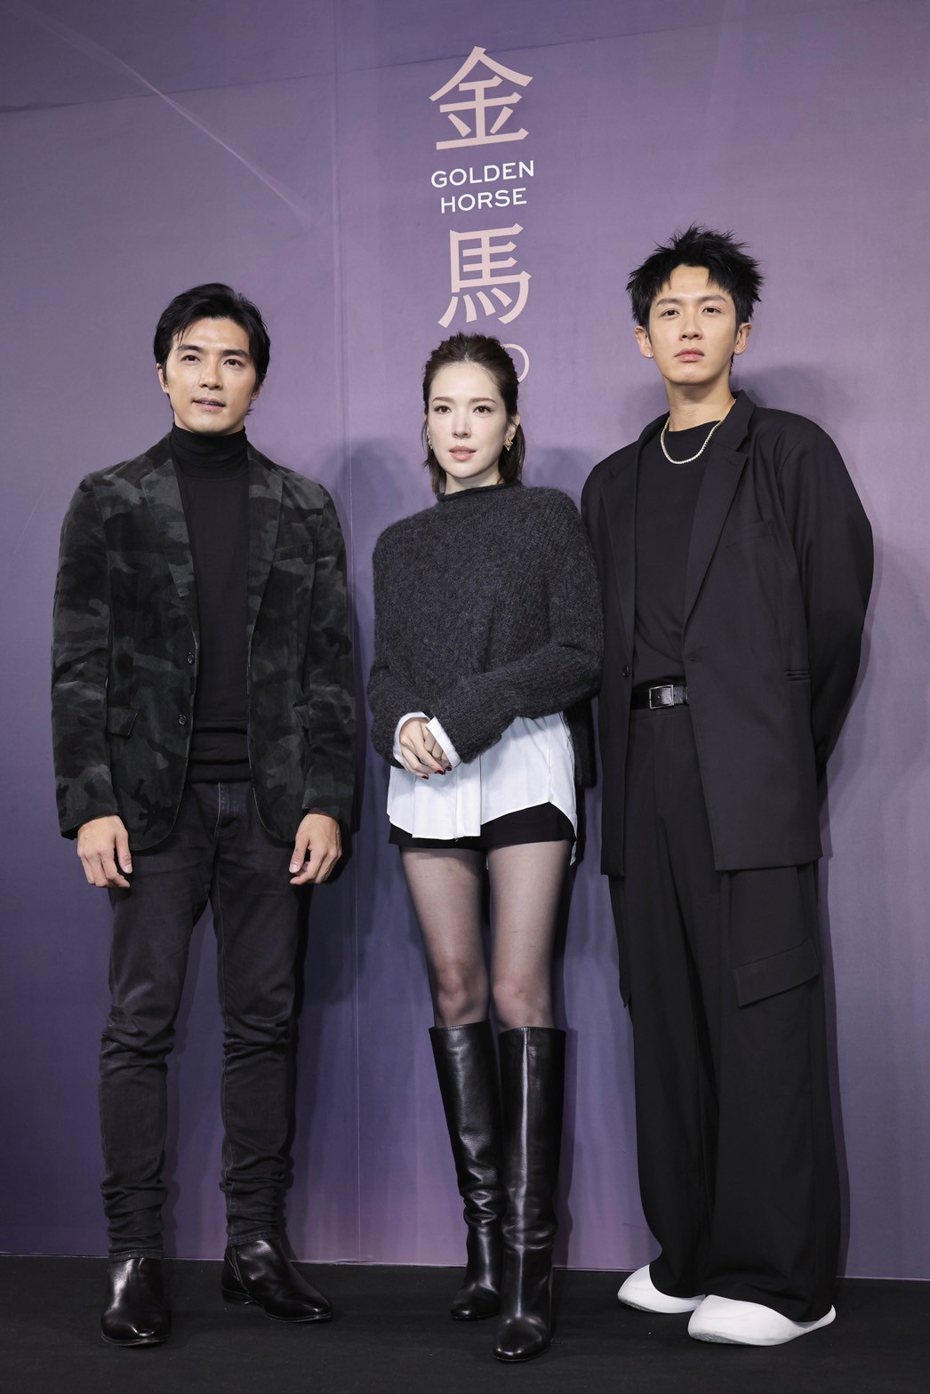 贺军翔(左起)、许玮甯以及柯震东出席「不够善良的我们」金马首映。记者李政龙／摄影